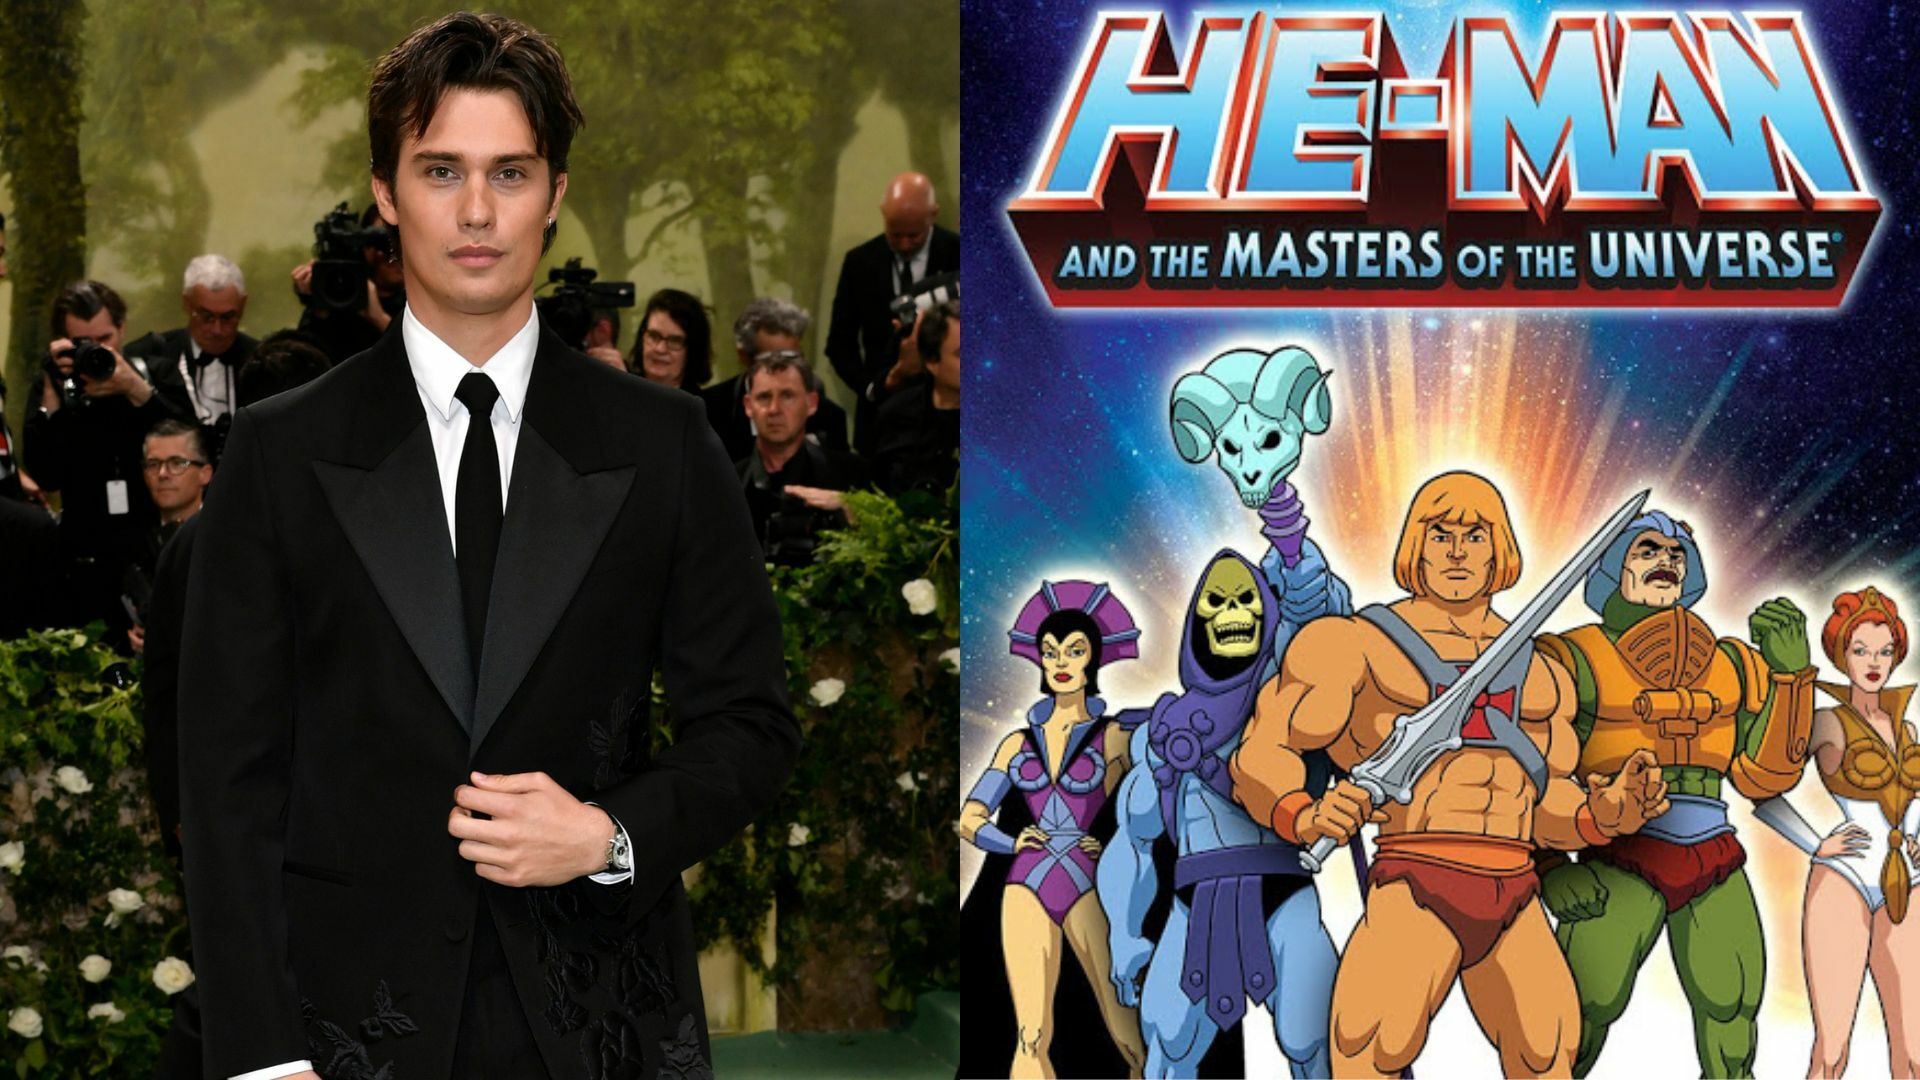 Masters of the Universe: ¿quién es Nicholas Galitzine, el actor que interpretará a He-Man?